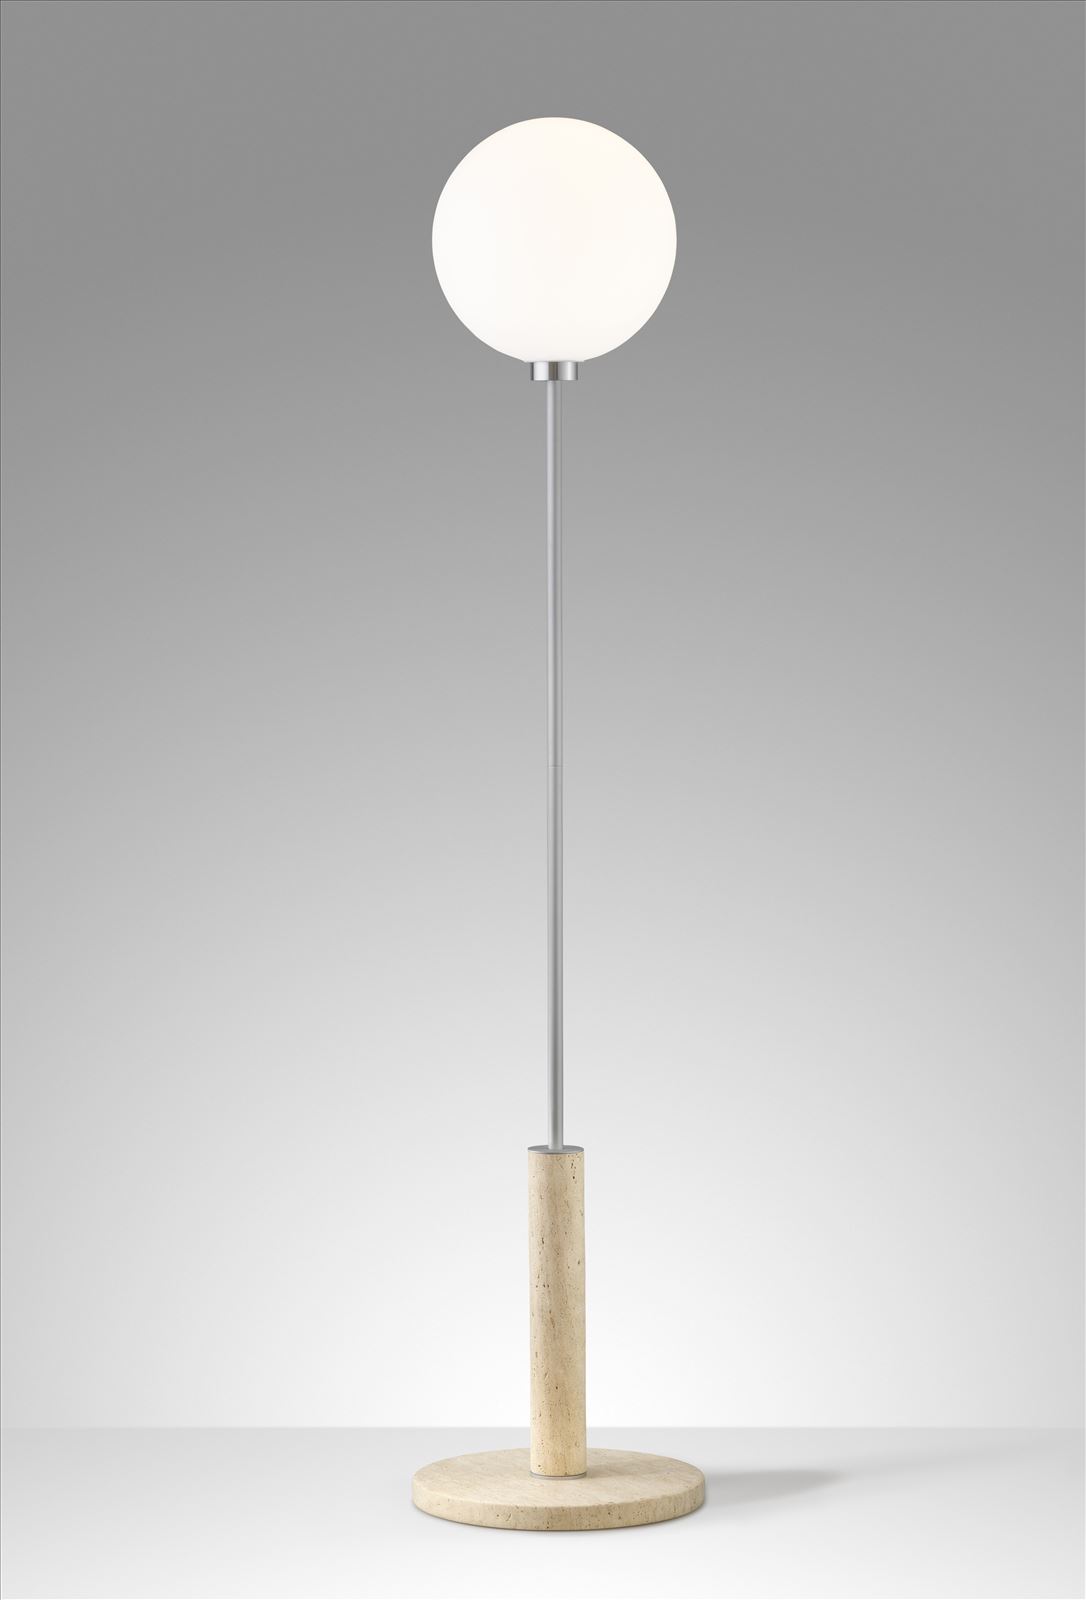 גופי תאורה מקטגוריית: מנורות עמידה  ,שם המוצר: TRAVERTINE